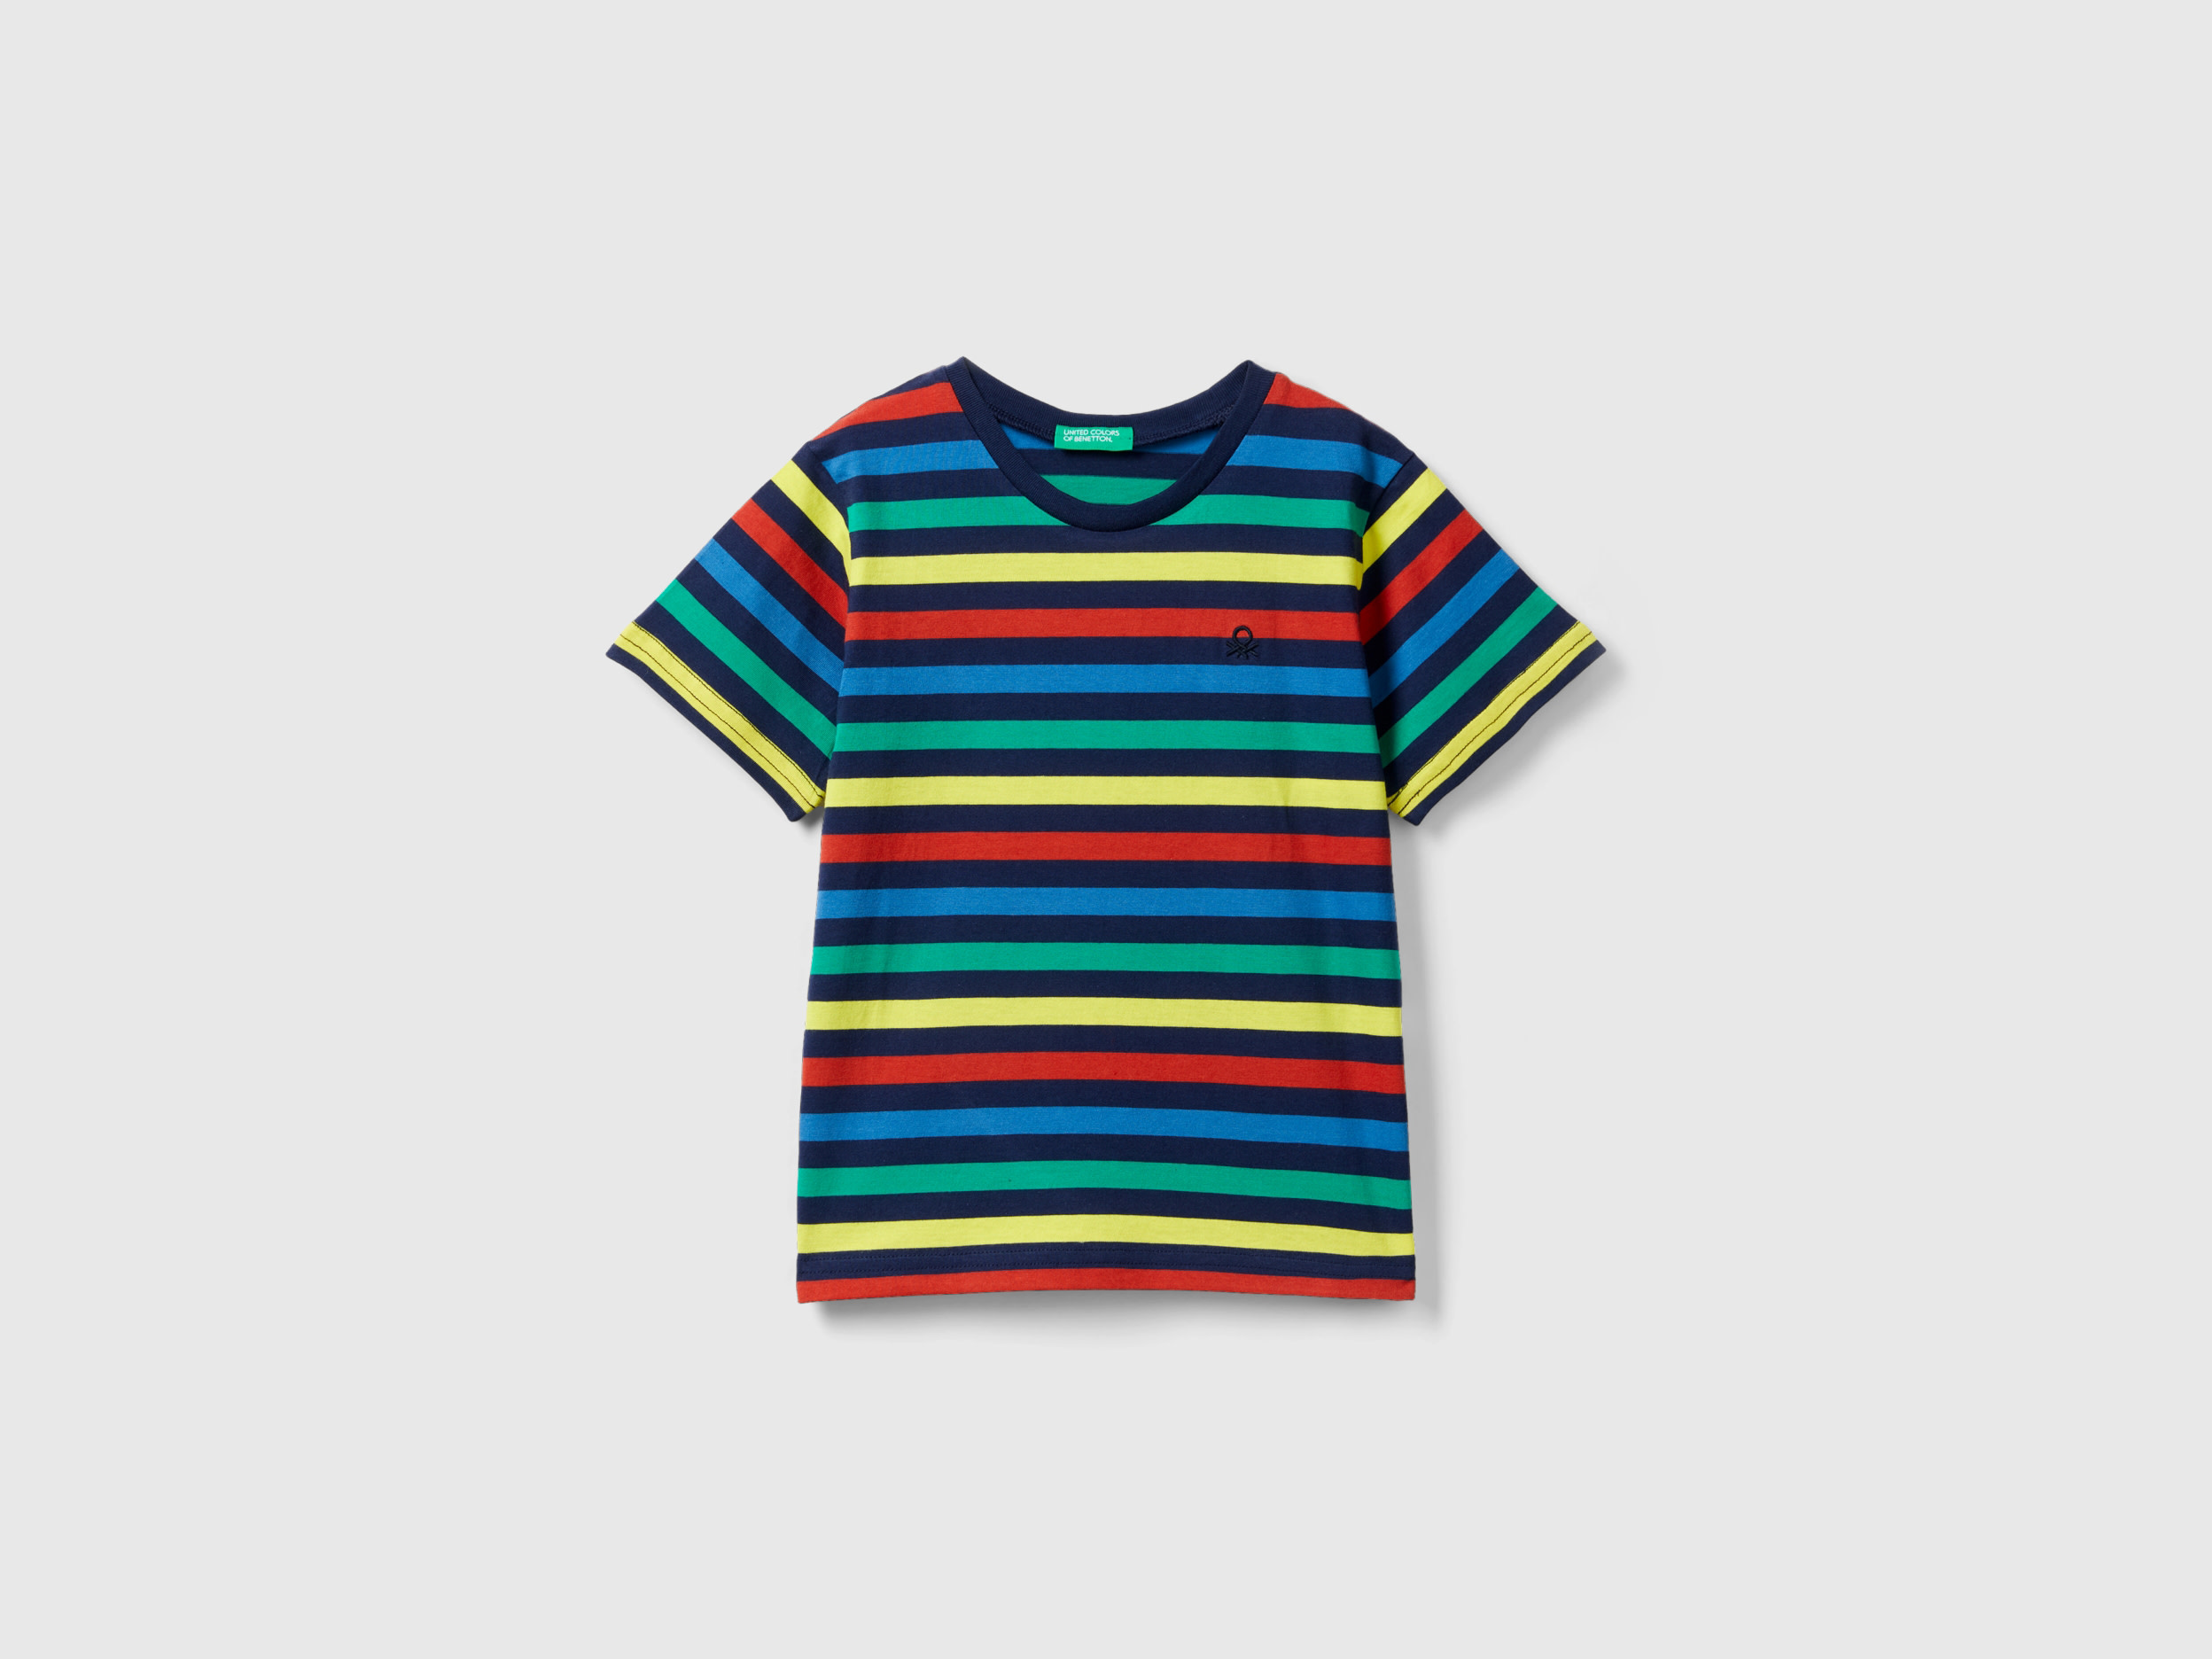 Benetton, Striped 100% Cotton T-shirt, size 12-18, Multi-color, Kids